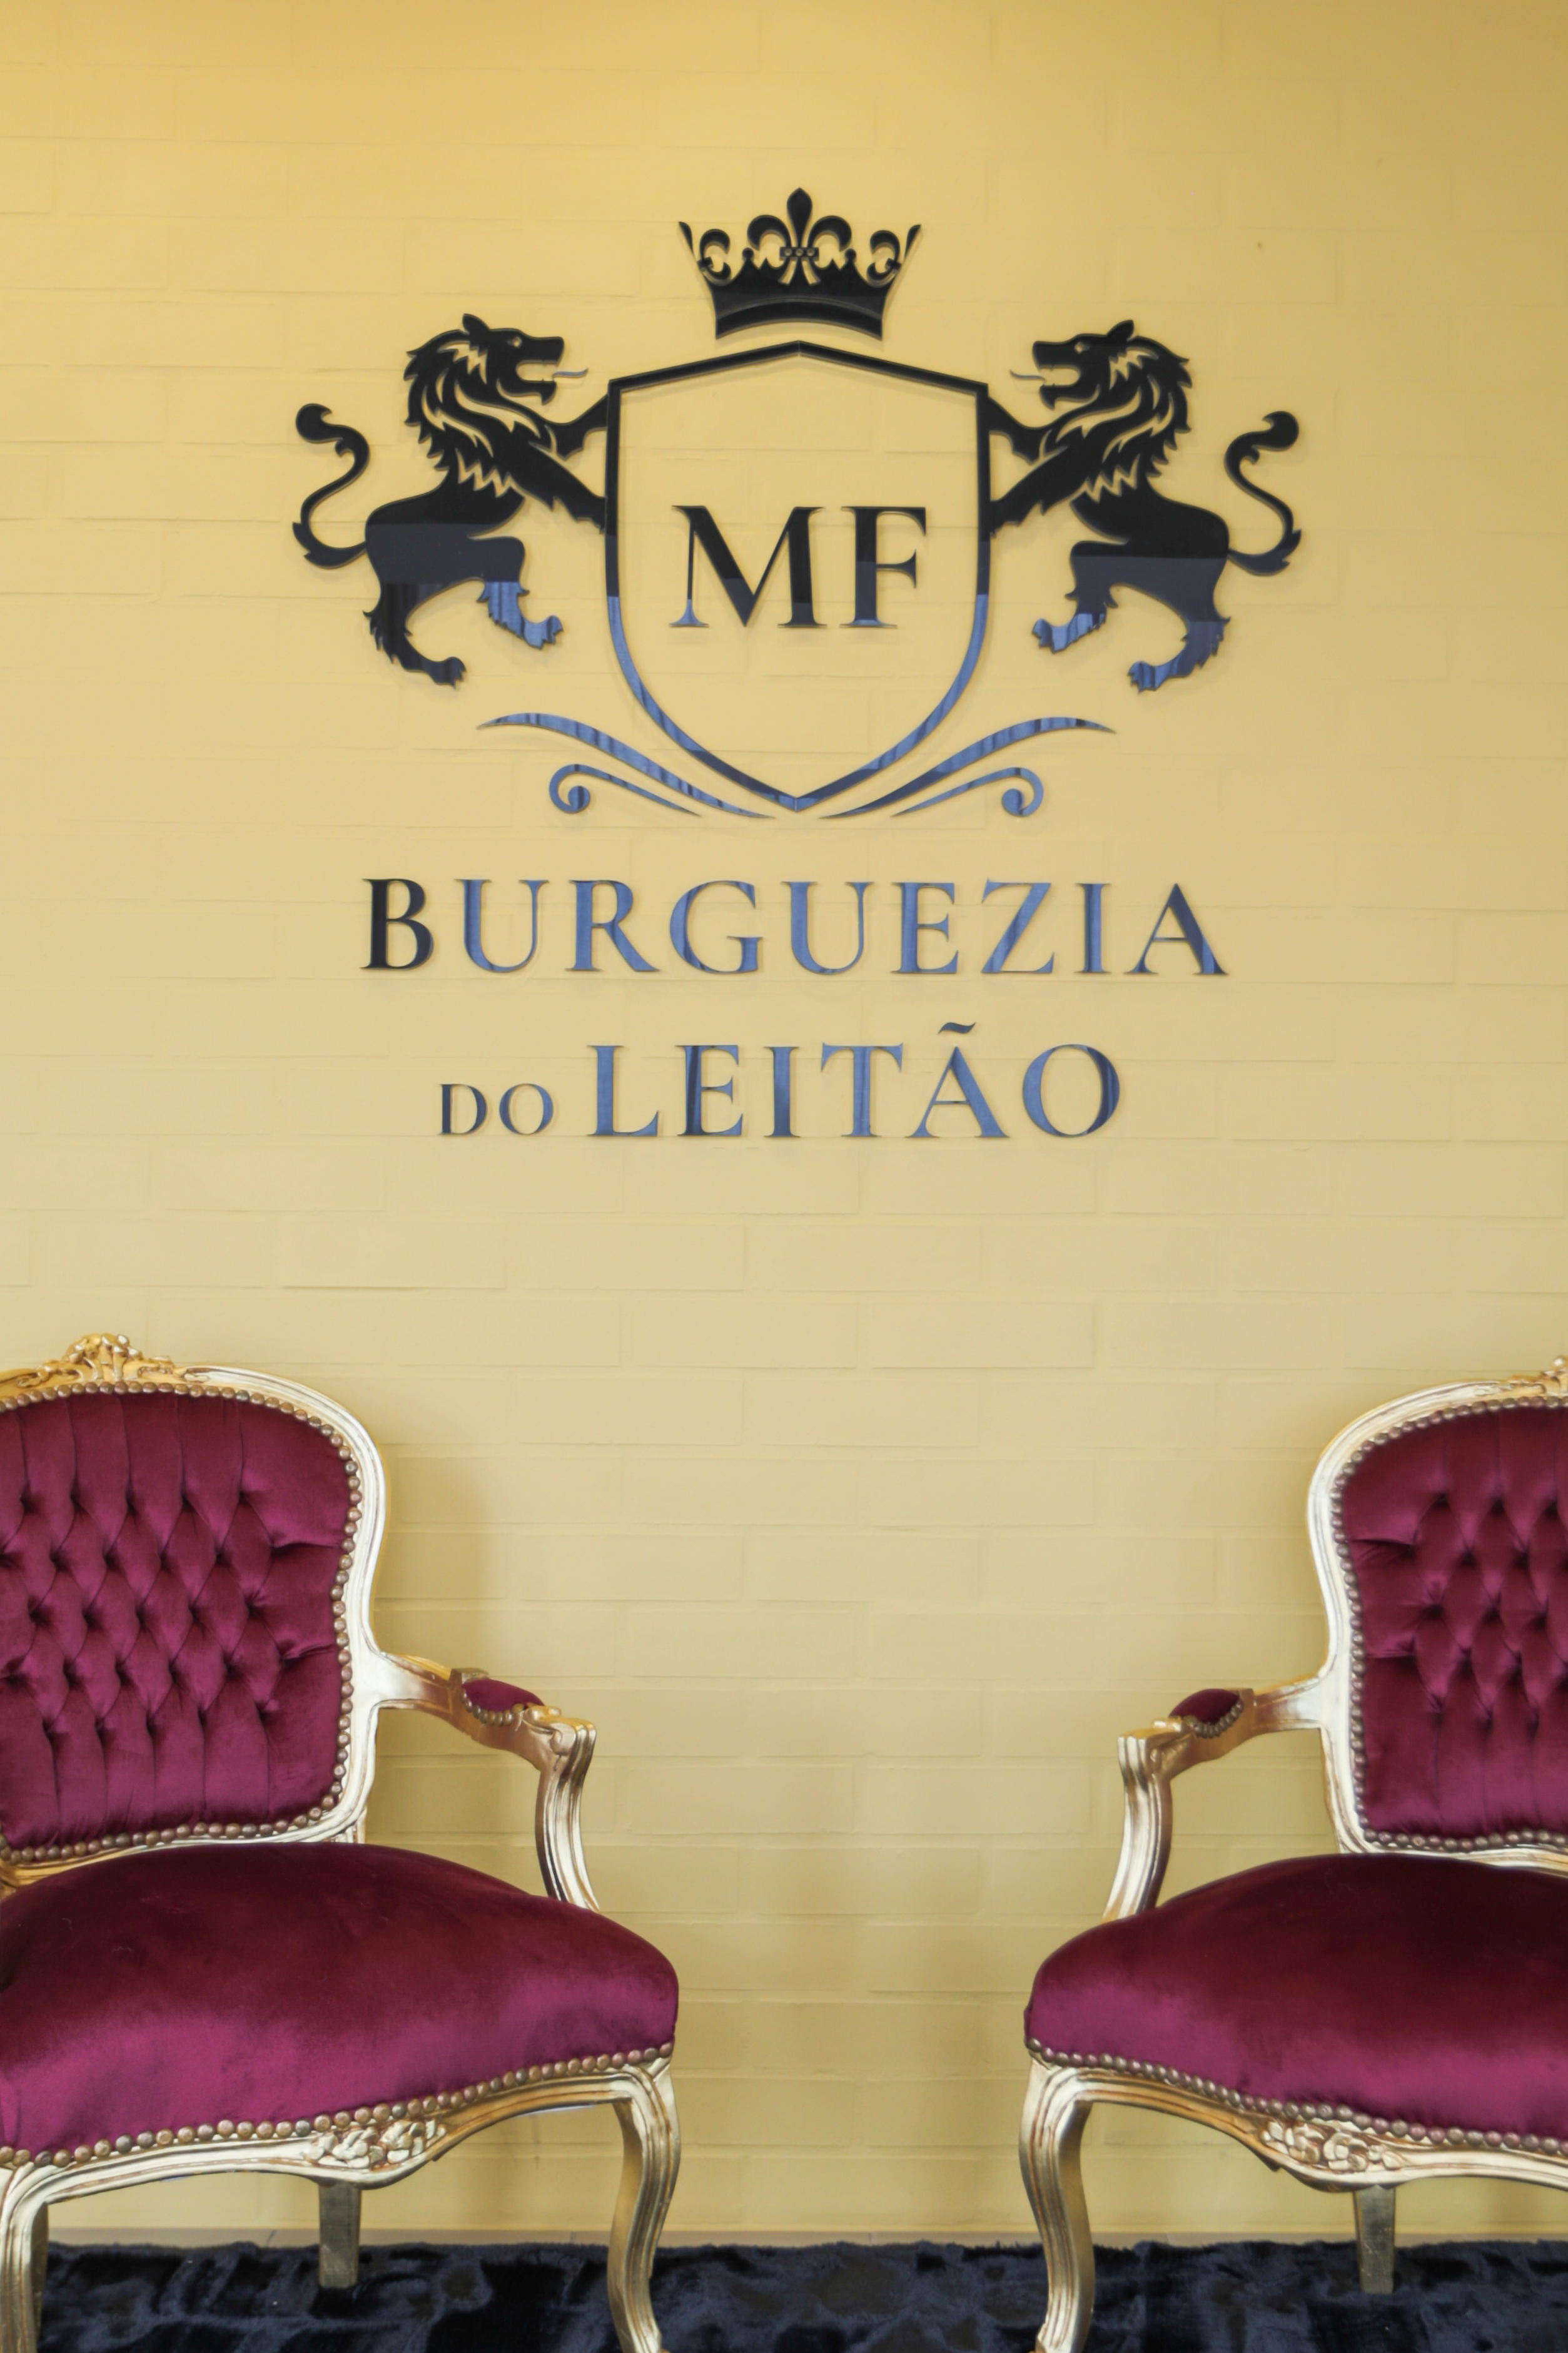 Burguezia do Leitão Hotel